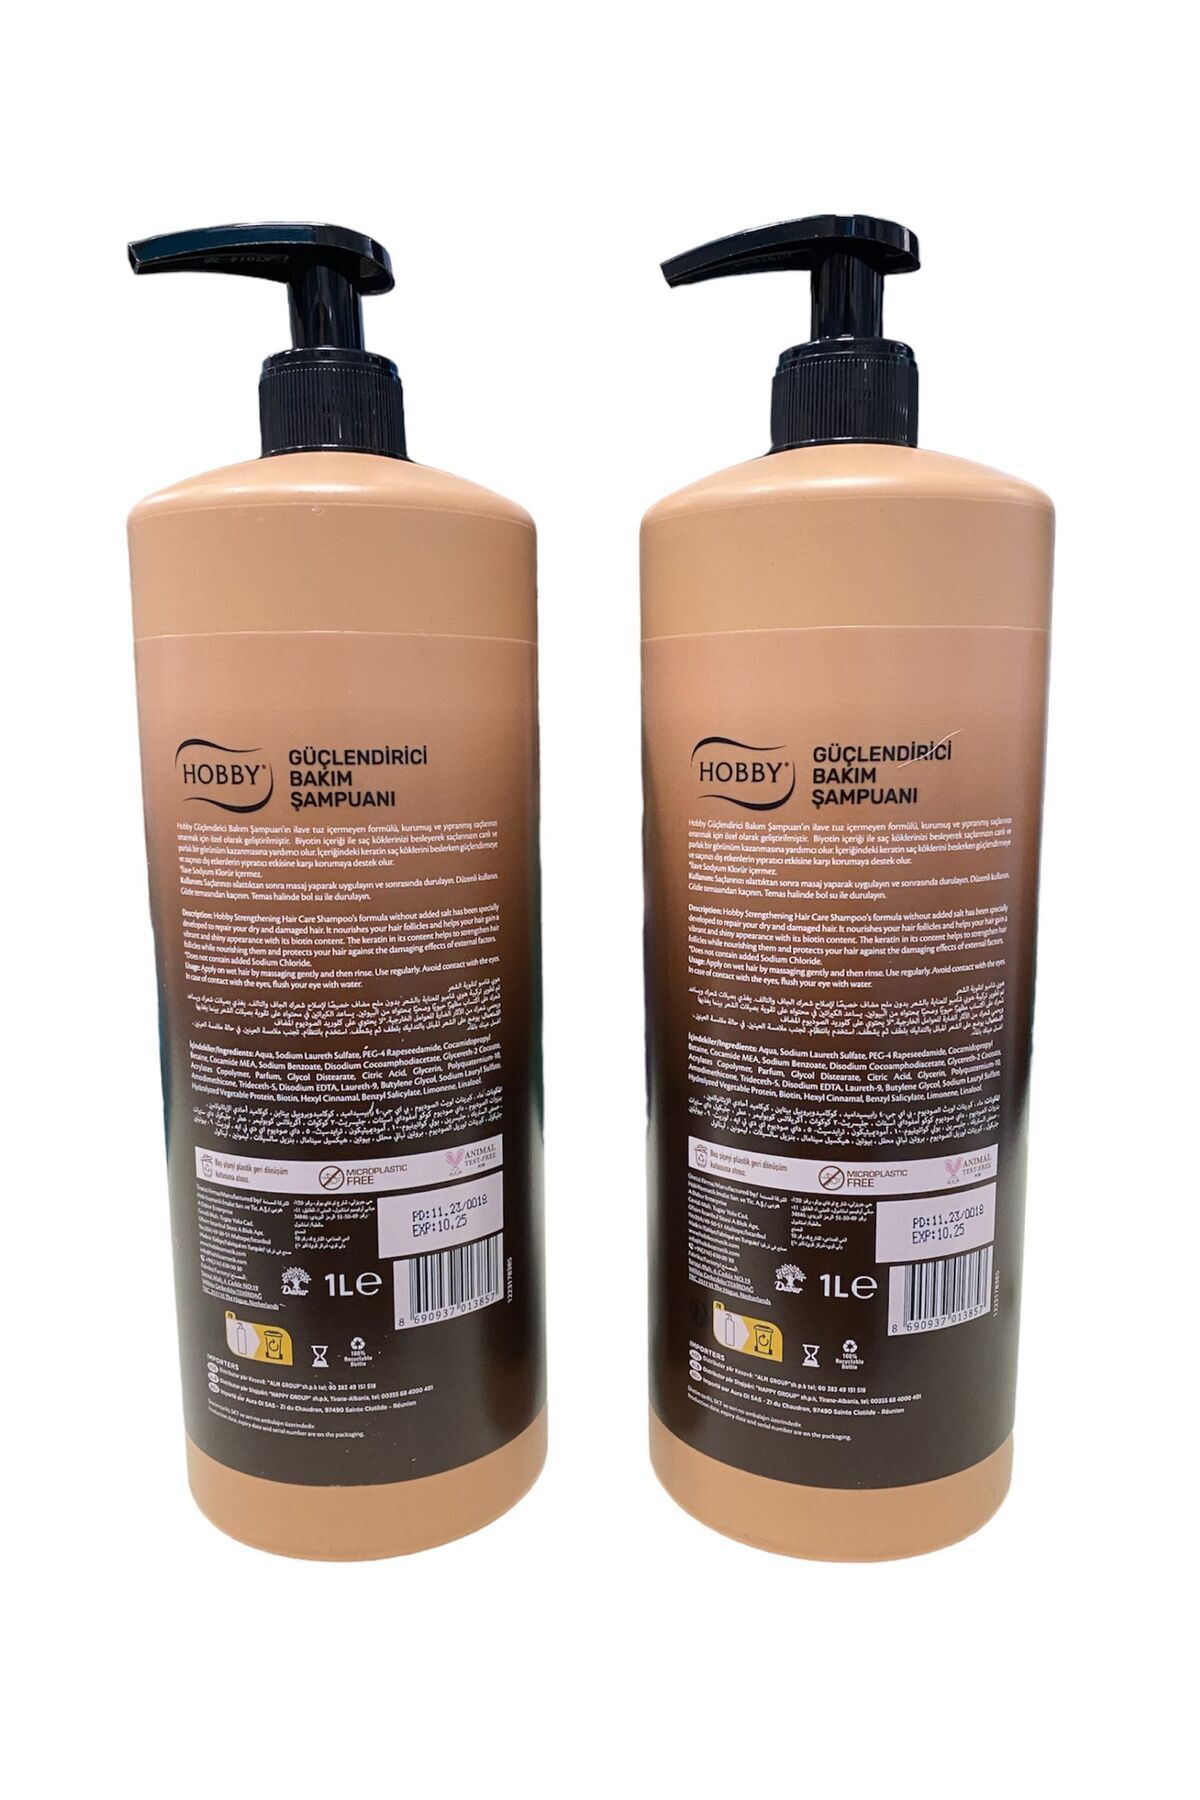 Hobby tuzsuz güçlendirici bakım şampuanı seti sette 2 adet ürün mevcuttur (2*100:2000ml)